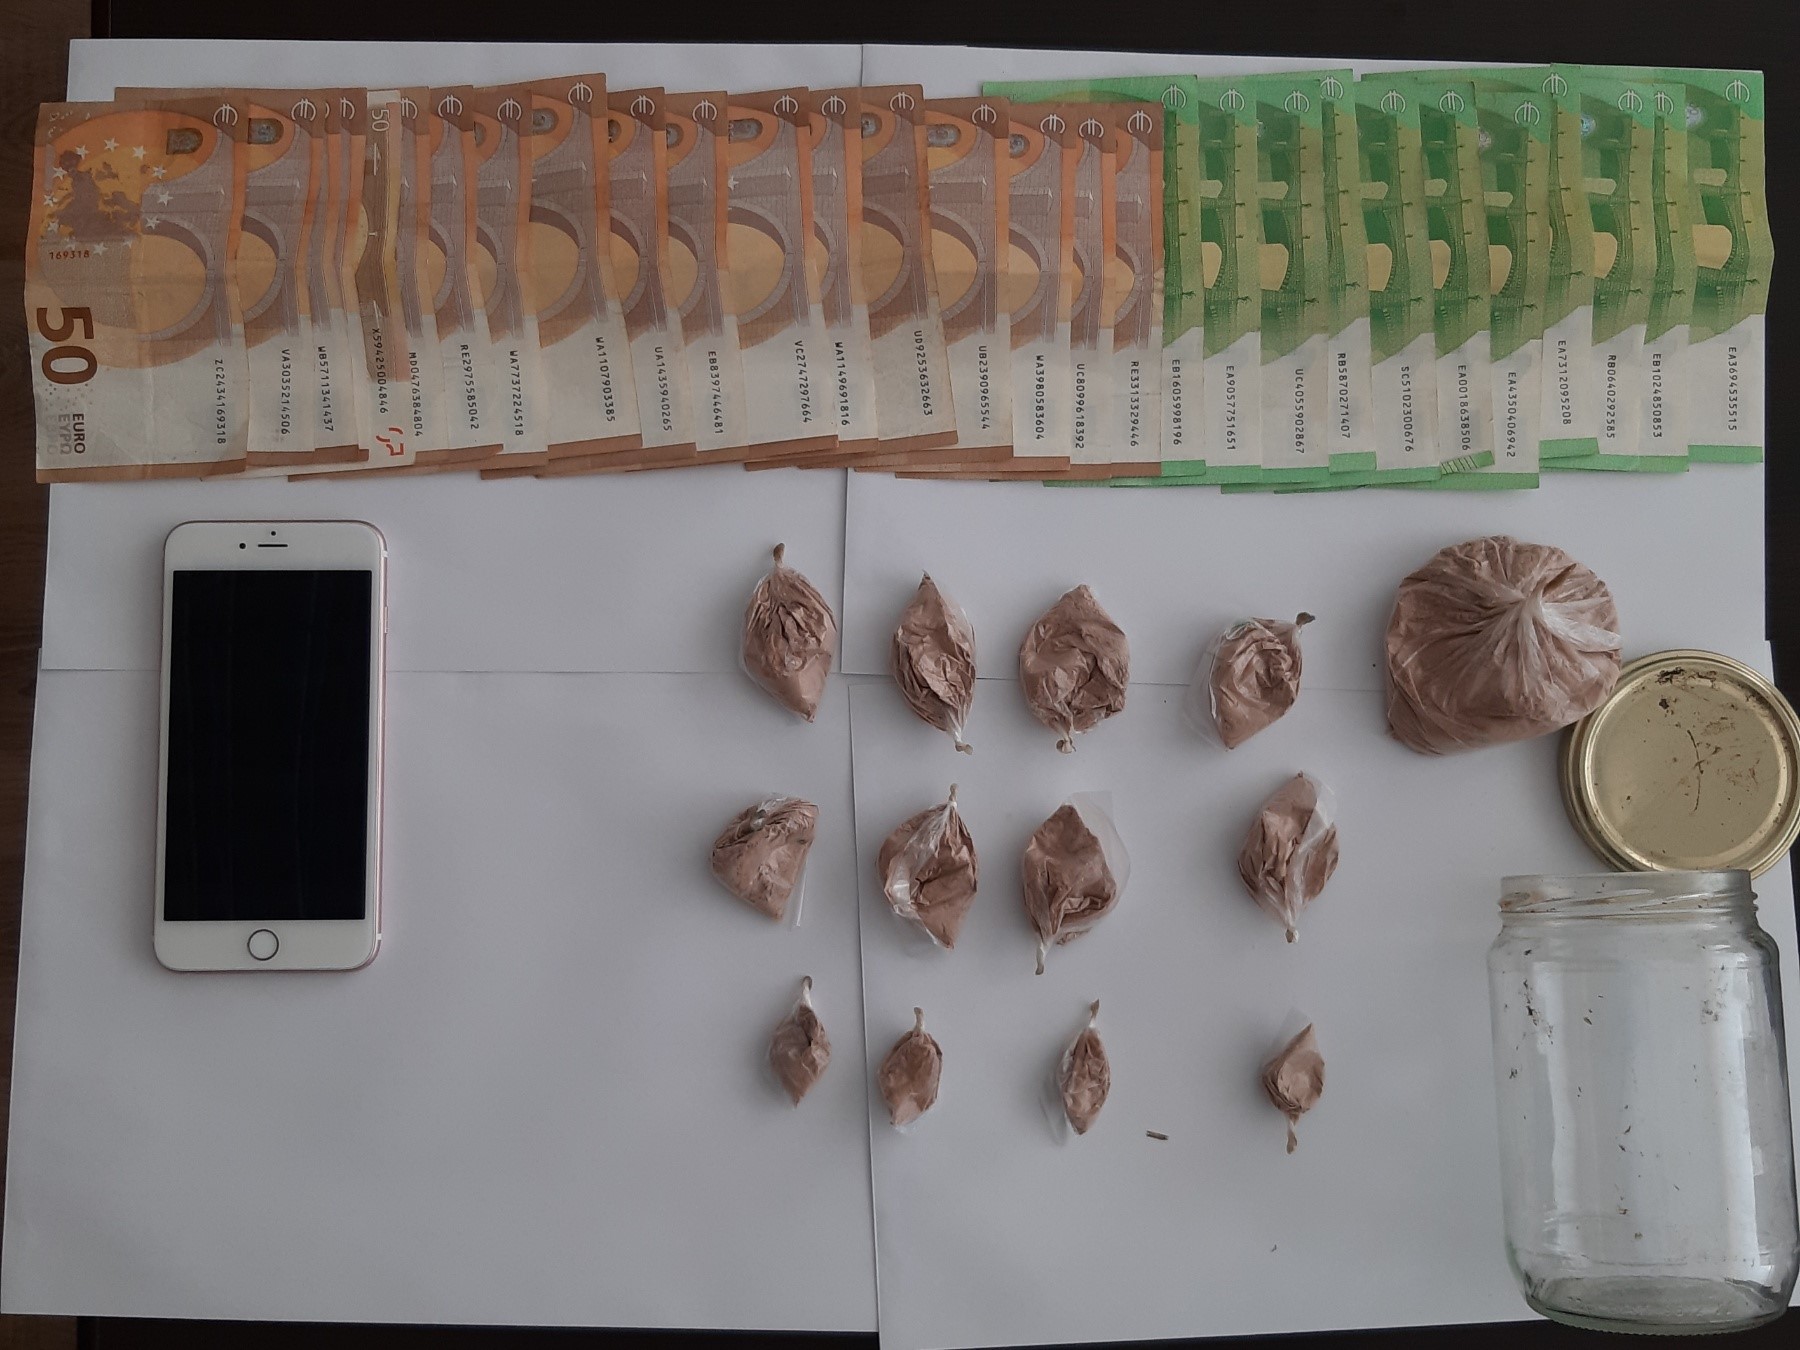 Njësiti i antidrogës zbarkon në Prizren – Konfiskohet heroinë, arrestohet i dyshuari A.D